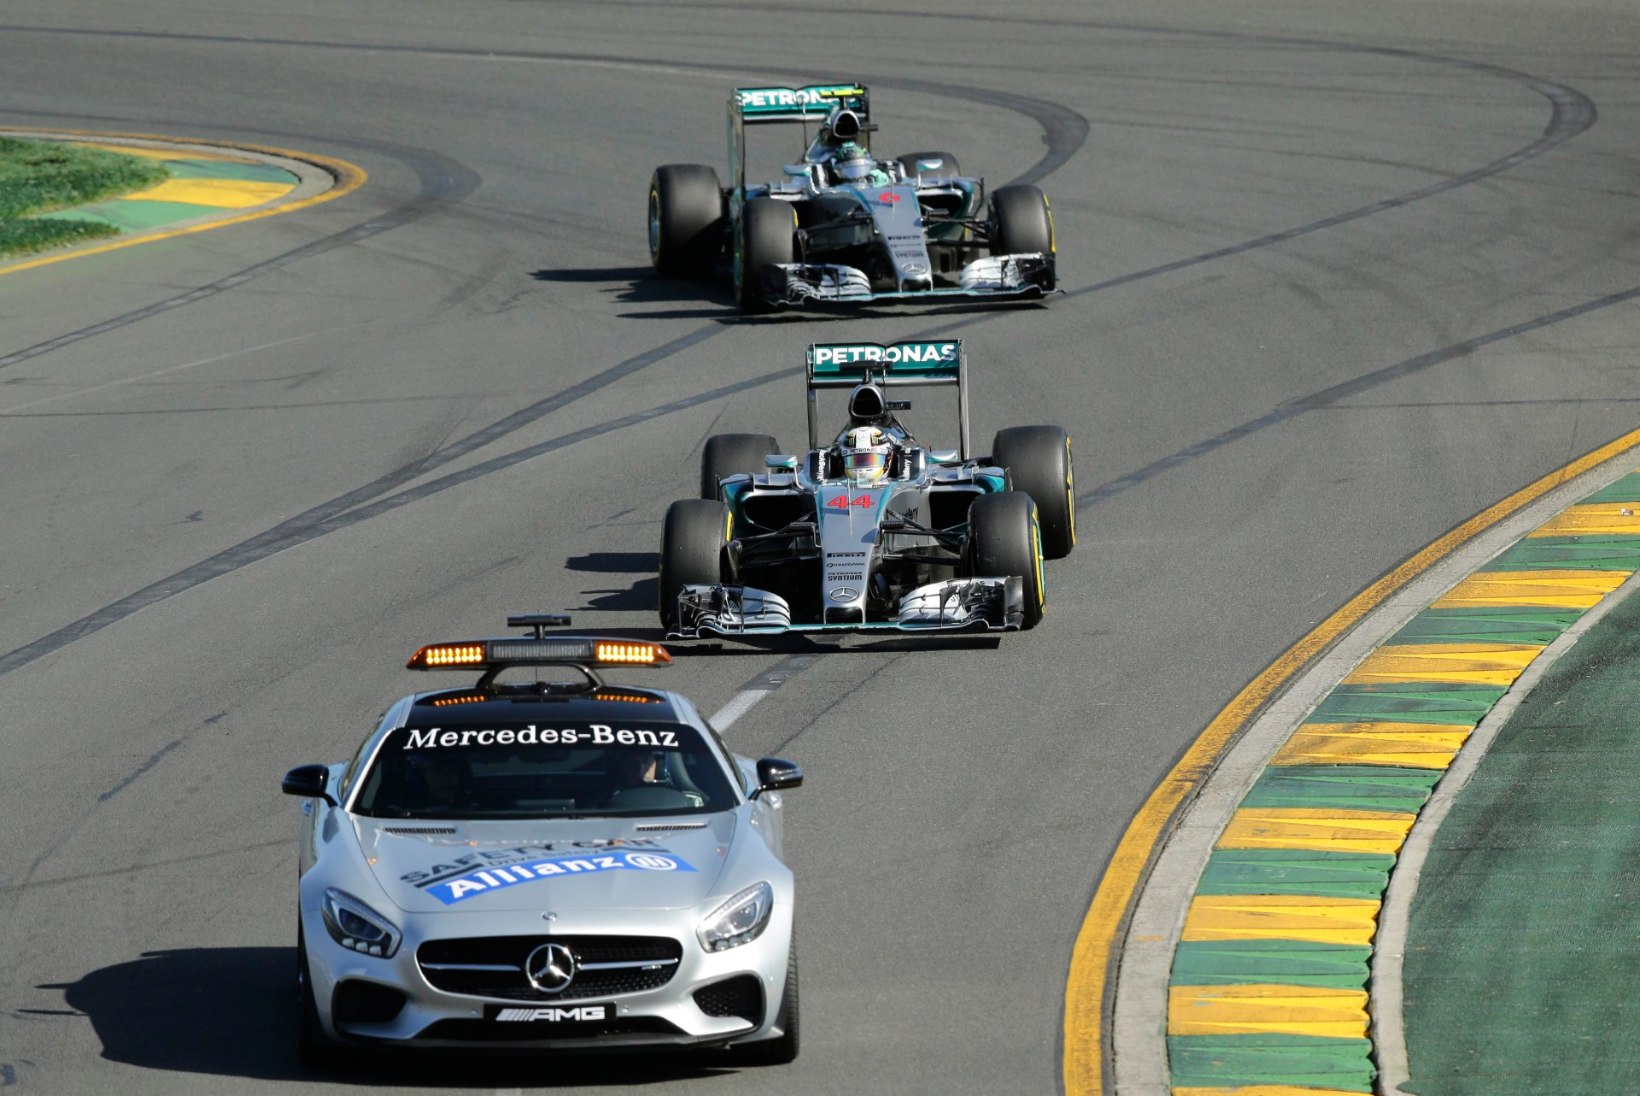 GALERII | Hamilton võitis Austraasias kindlalt, finišisse jõudis vaid 11 autot